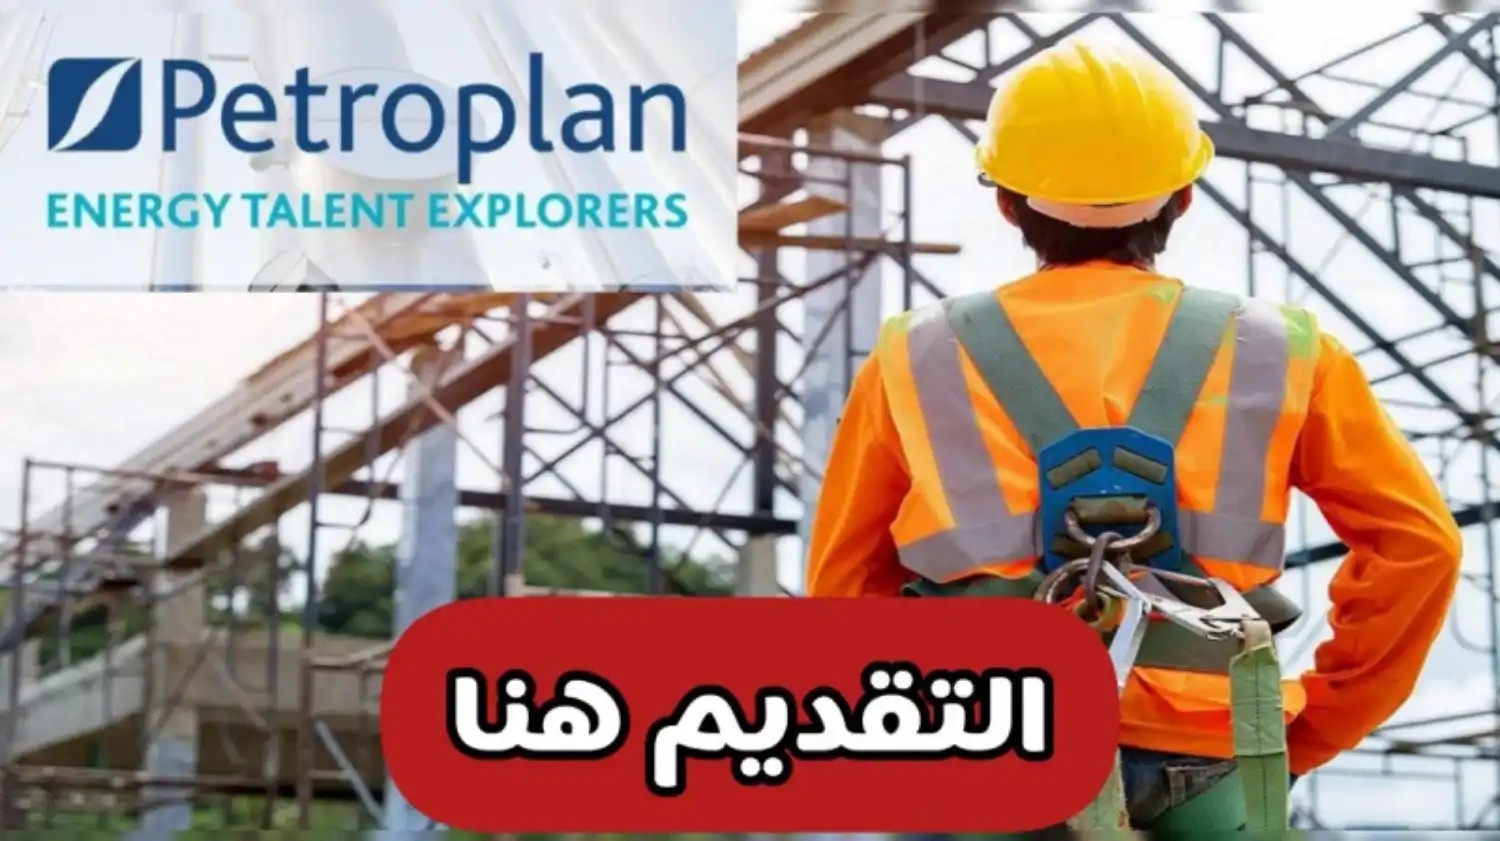 بشروط بسيطة .. شركة بتروبلان العالمية في قطر تعلن عن وظائف جديدة بمجال النفط والغاز براتب 40,000 ريال